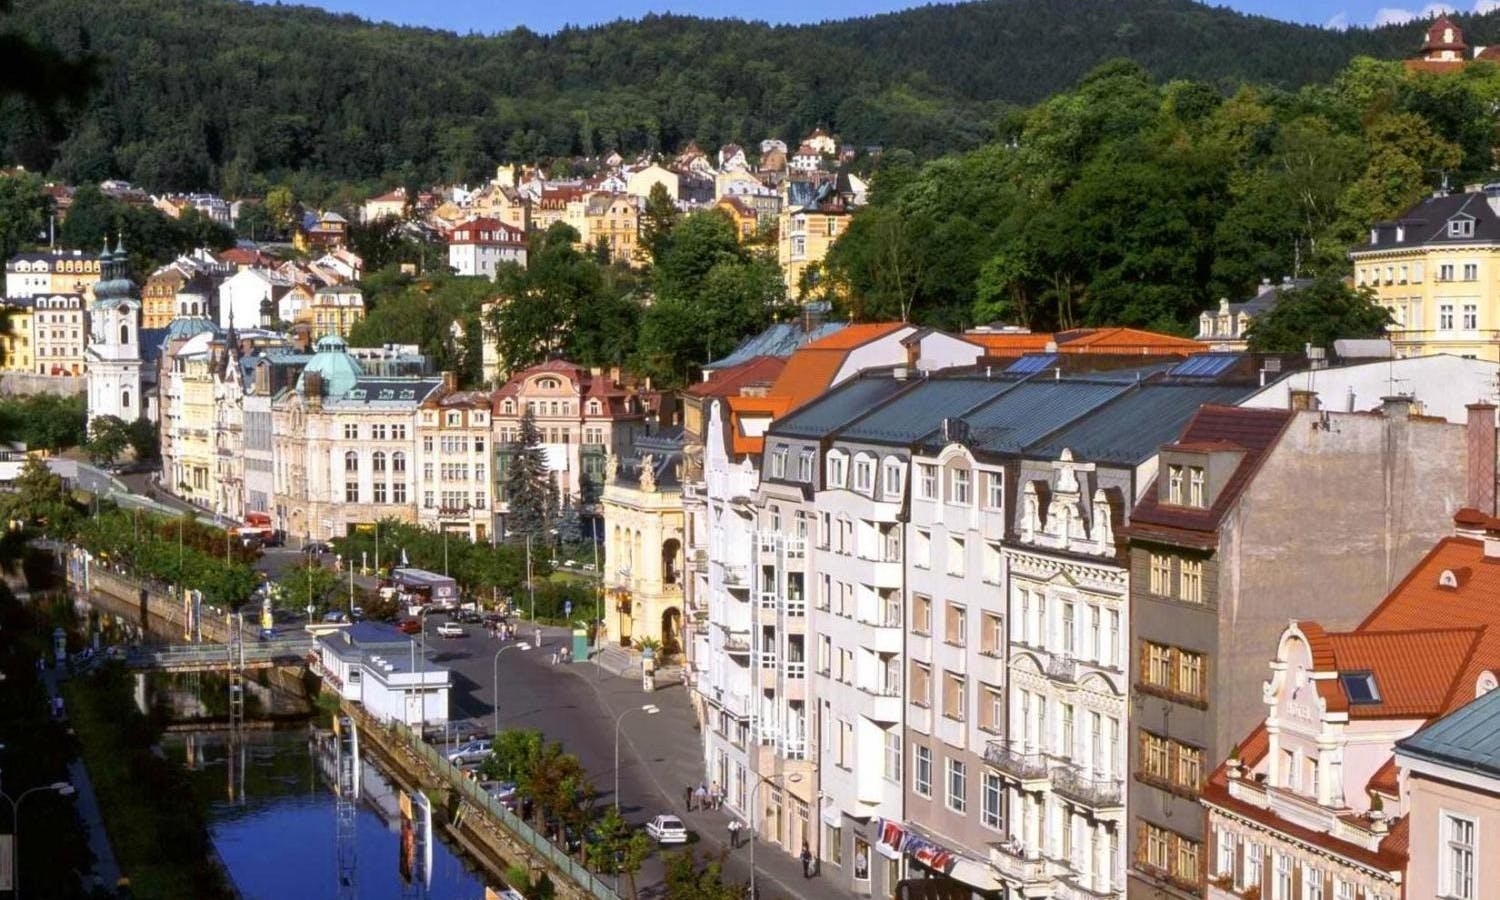 From Prague Karlovy vary tour10.jpg